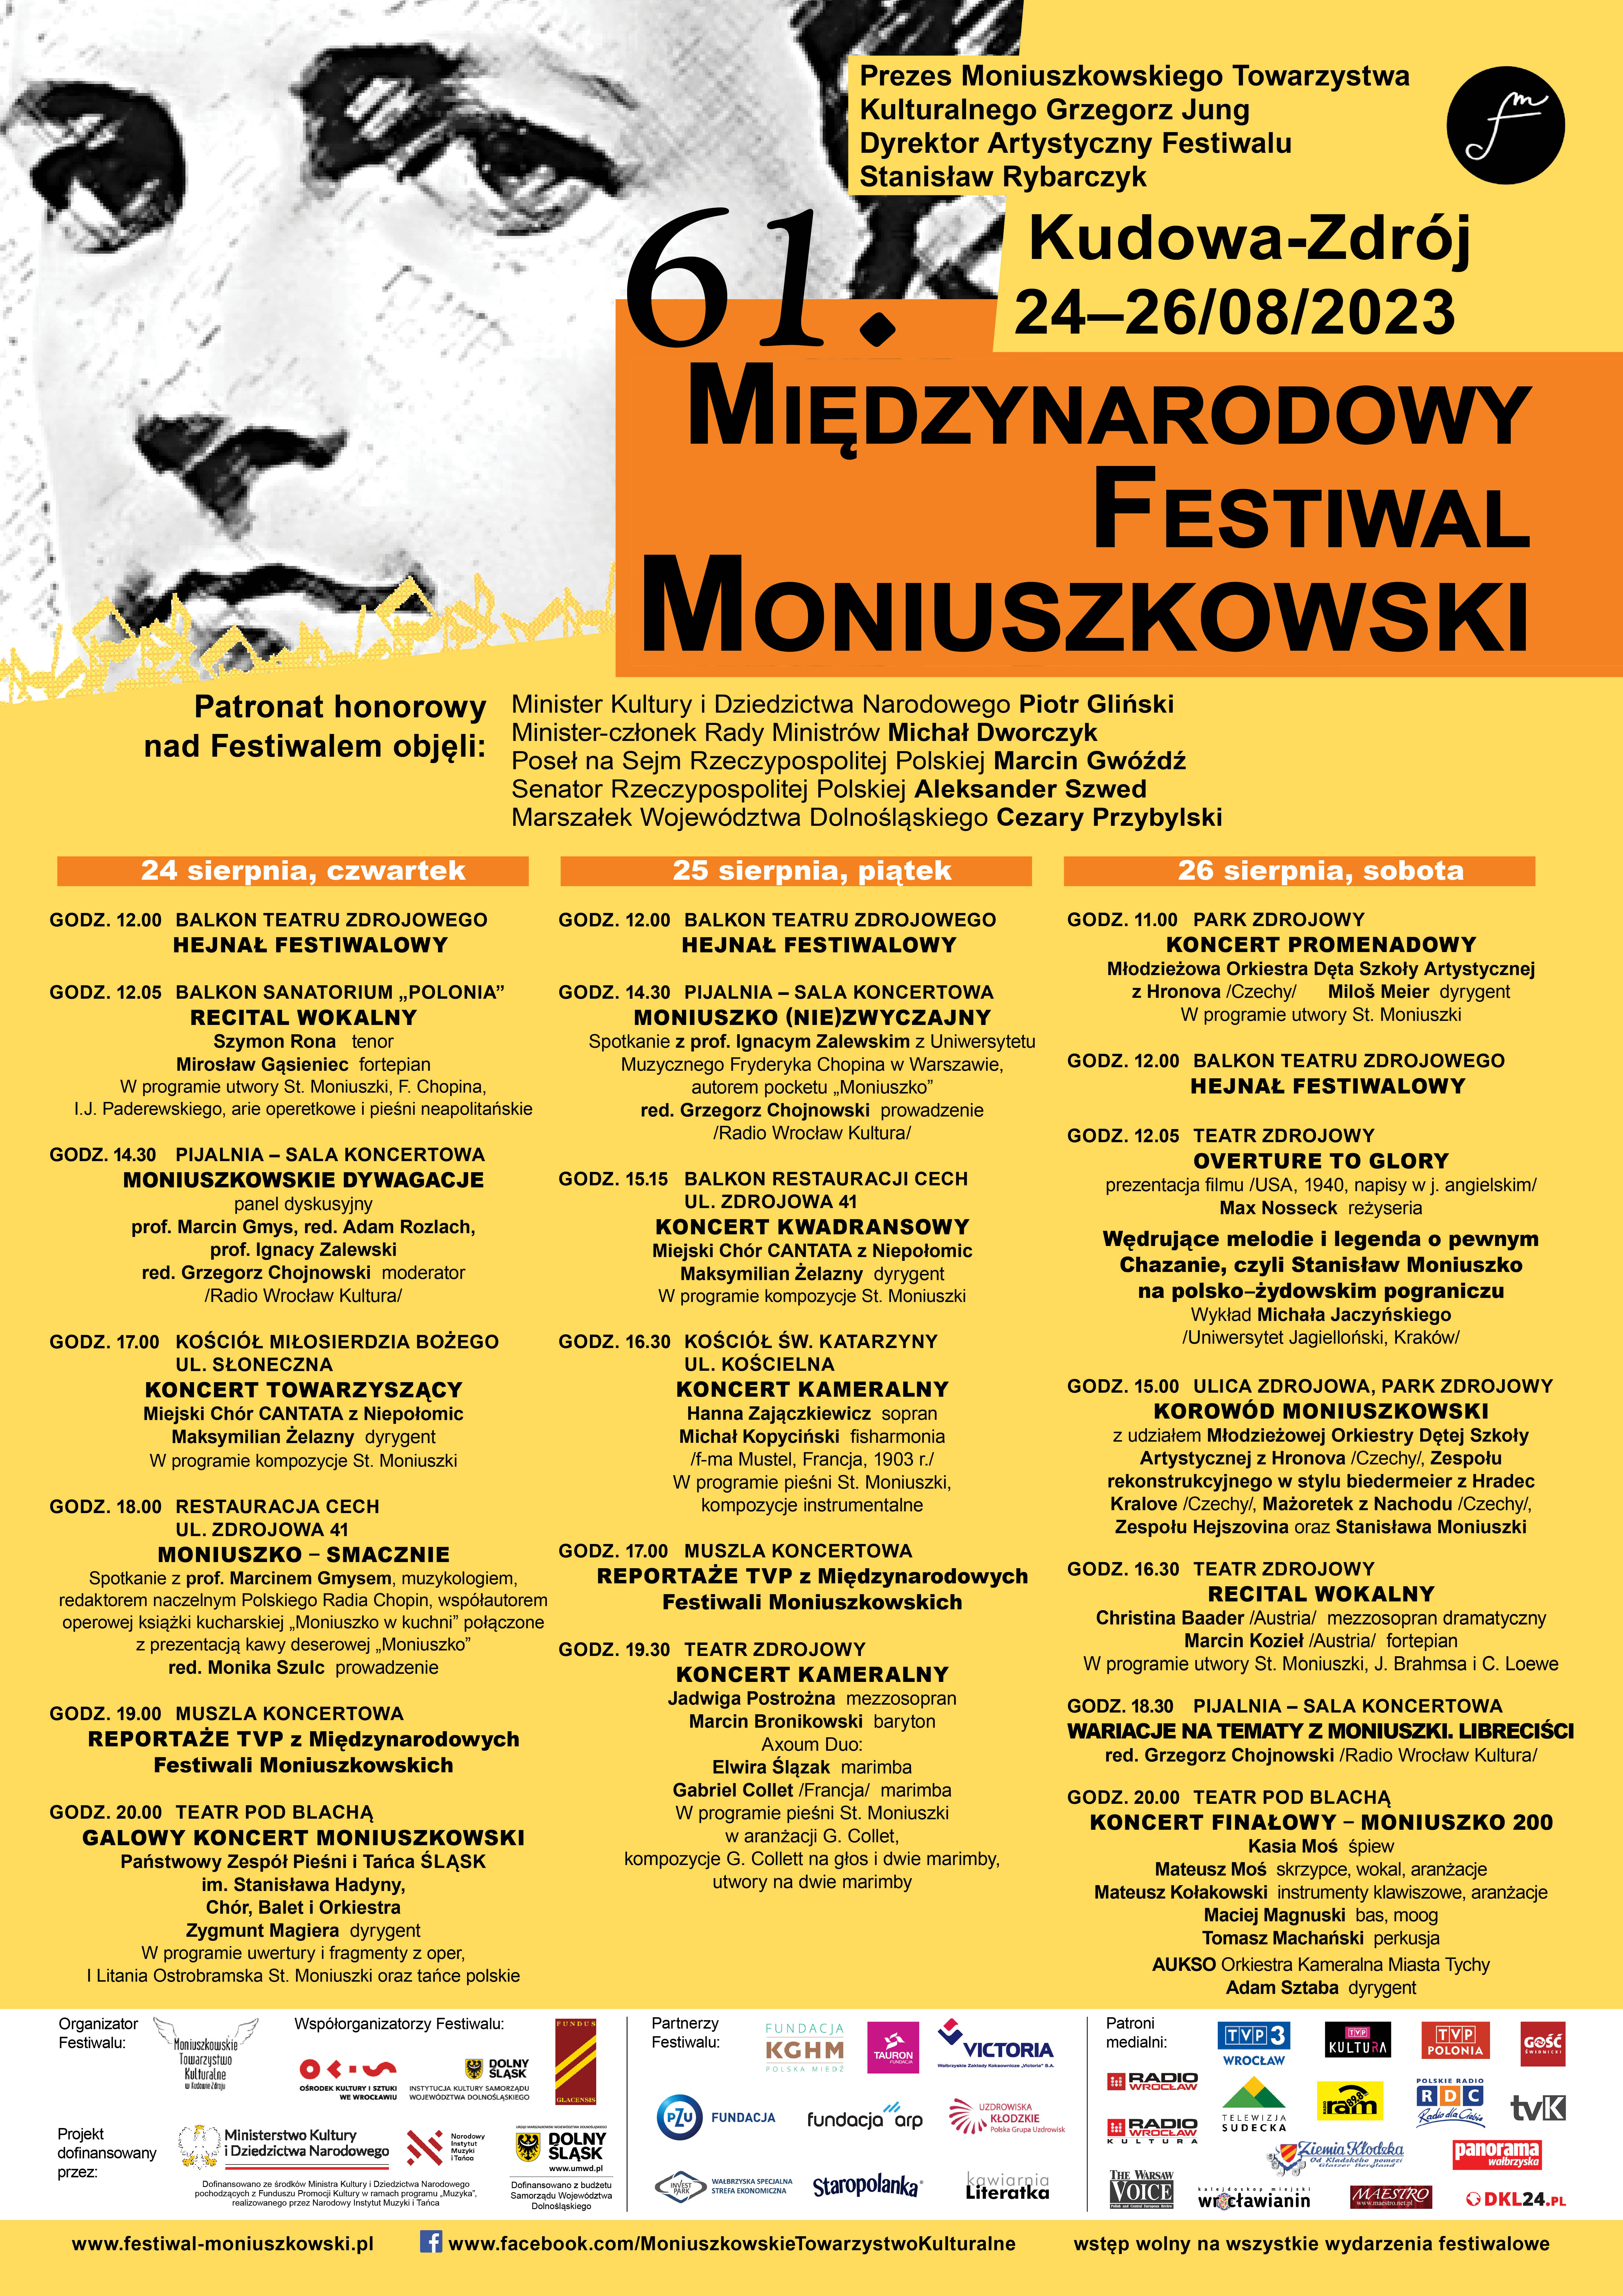 Międzynarodowy Festiwal Moniuszkowski